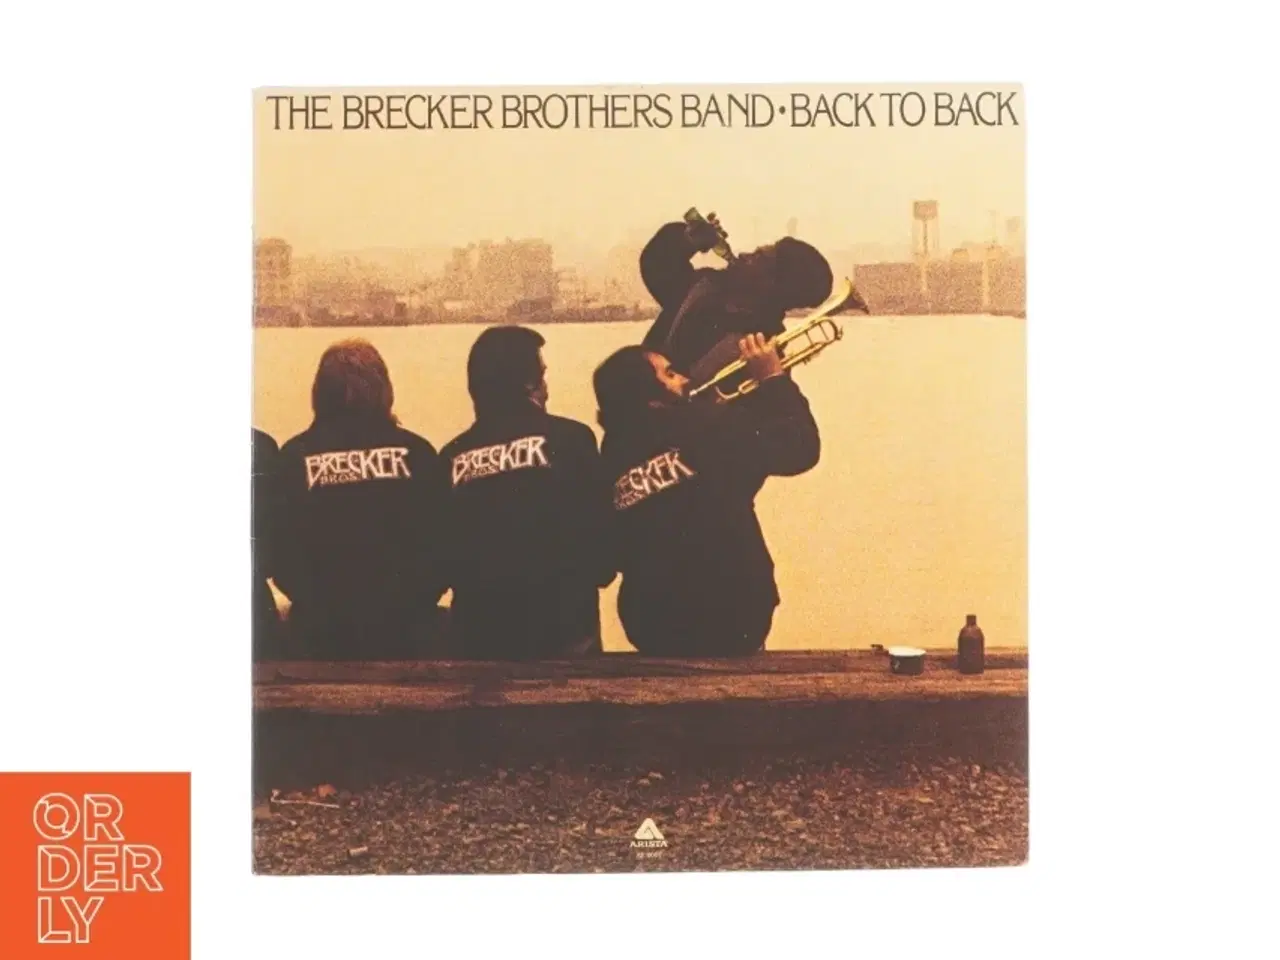 Billede 1 - Back to back af The Brecker Brothers fra LP